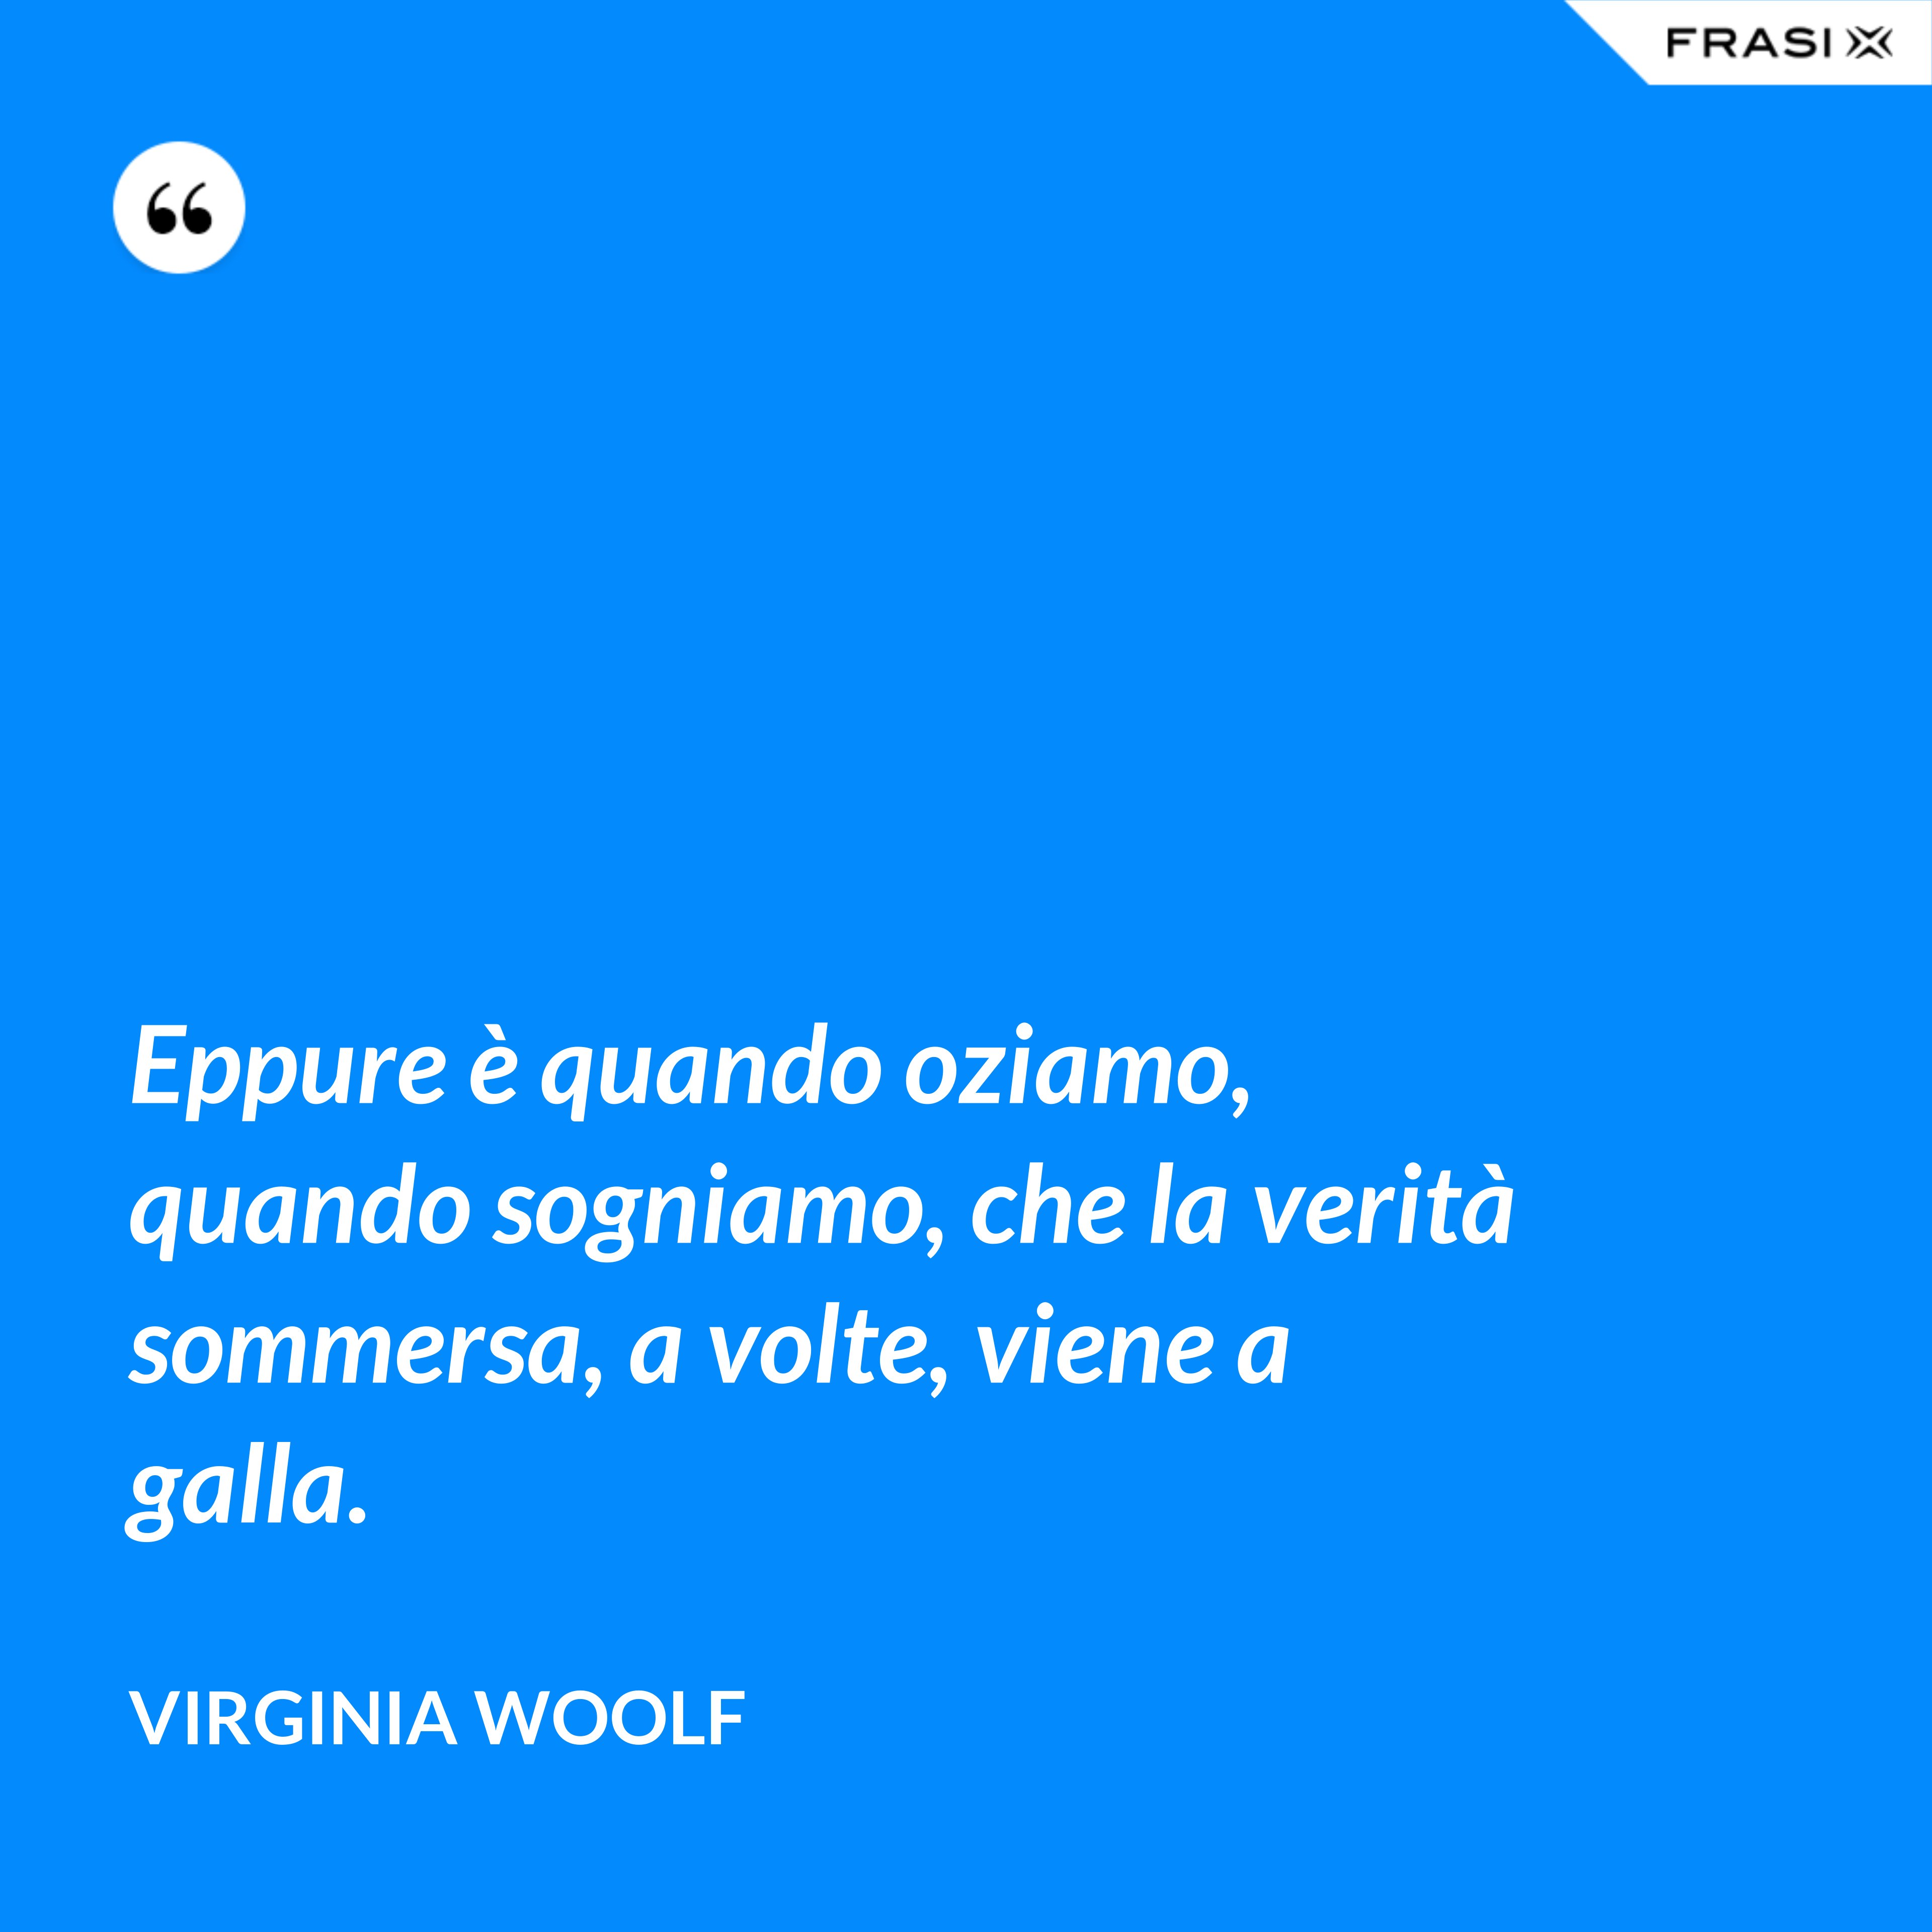 Eppure è quando oziamo, quando sogniamo, che la verità sommersa, a volte, viene a galla. - Virginia Woolf